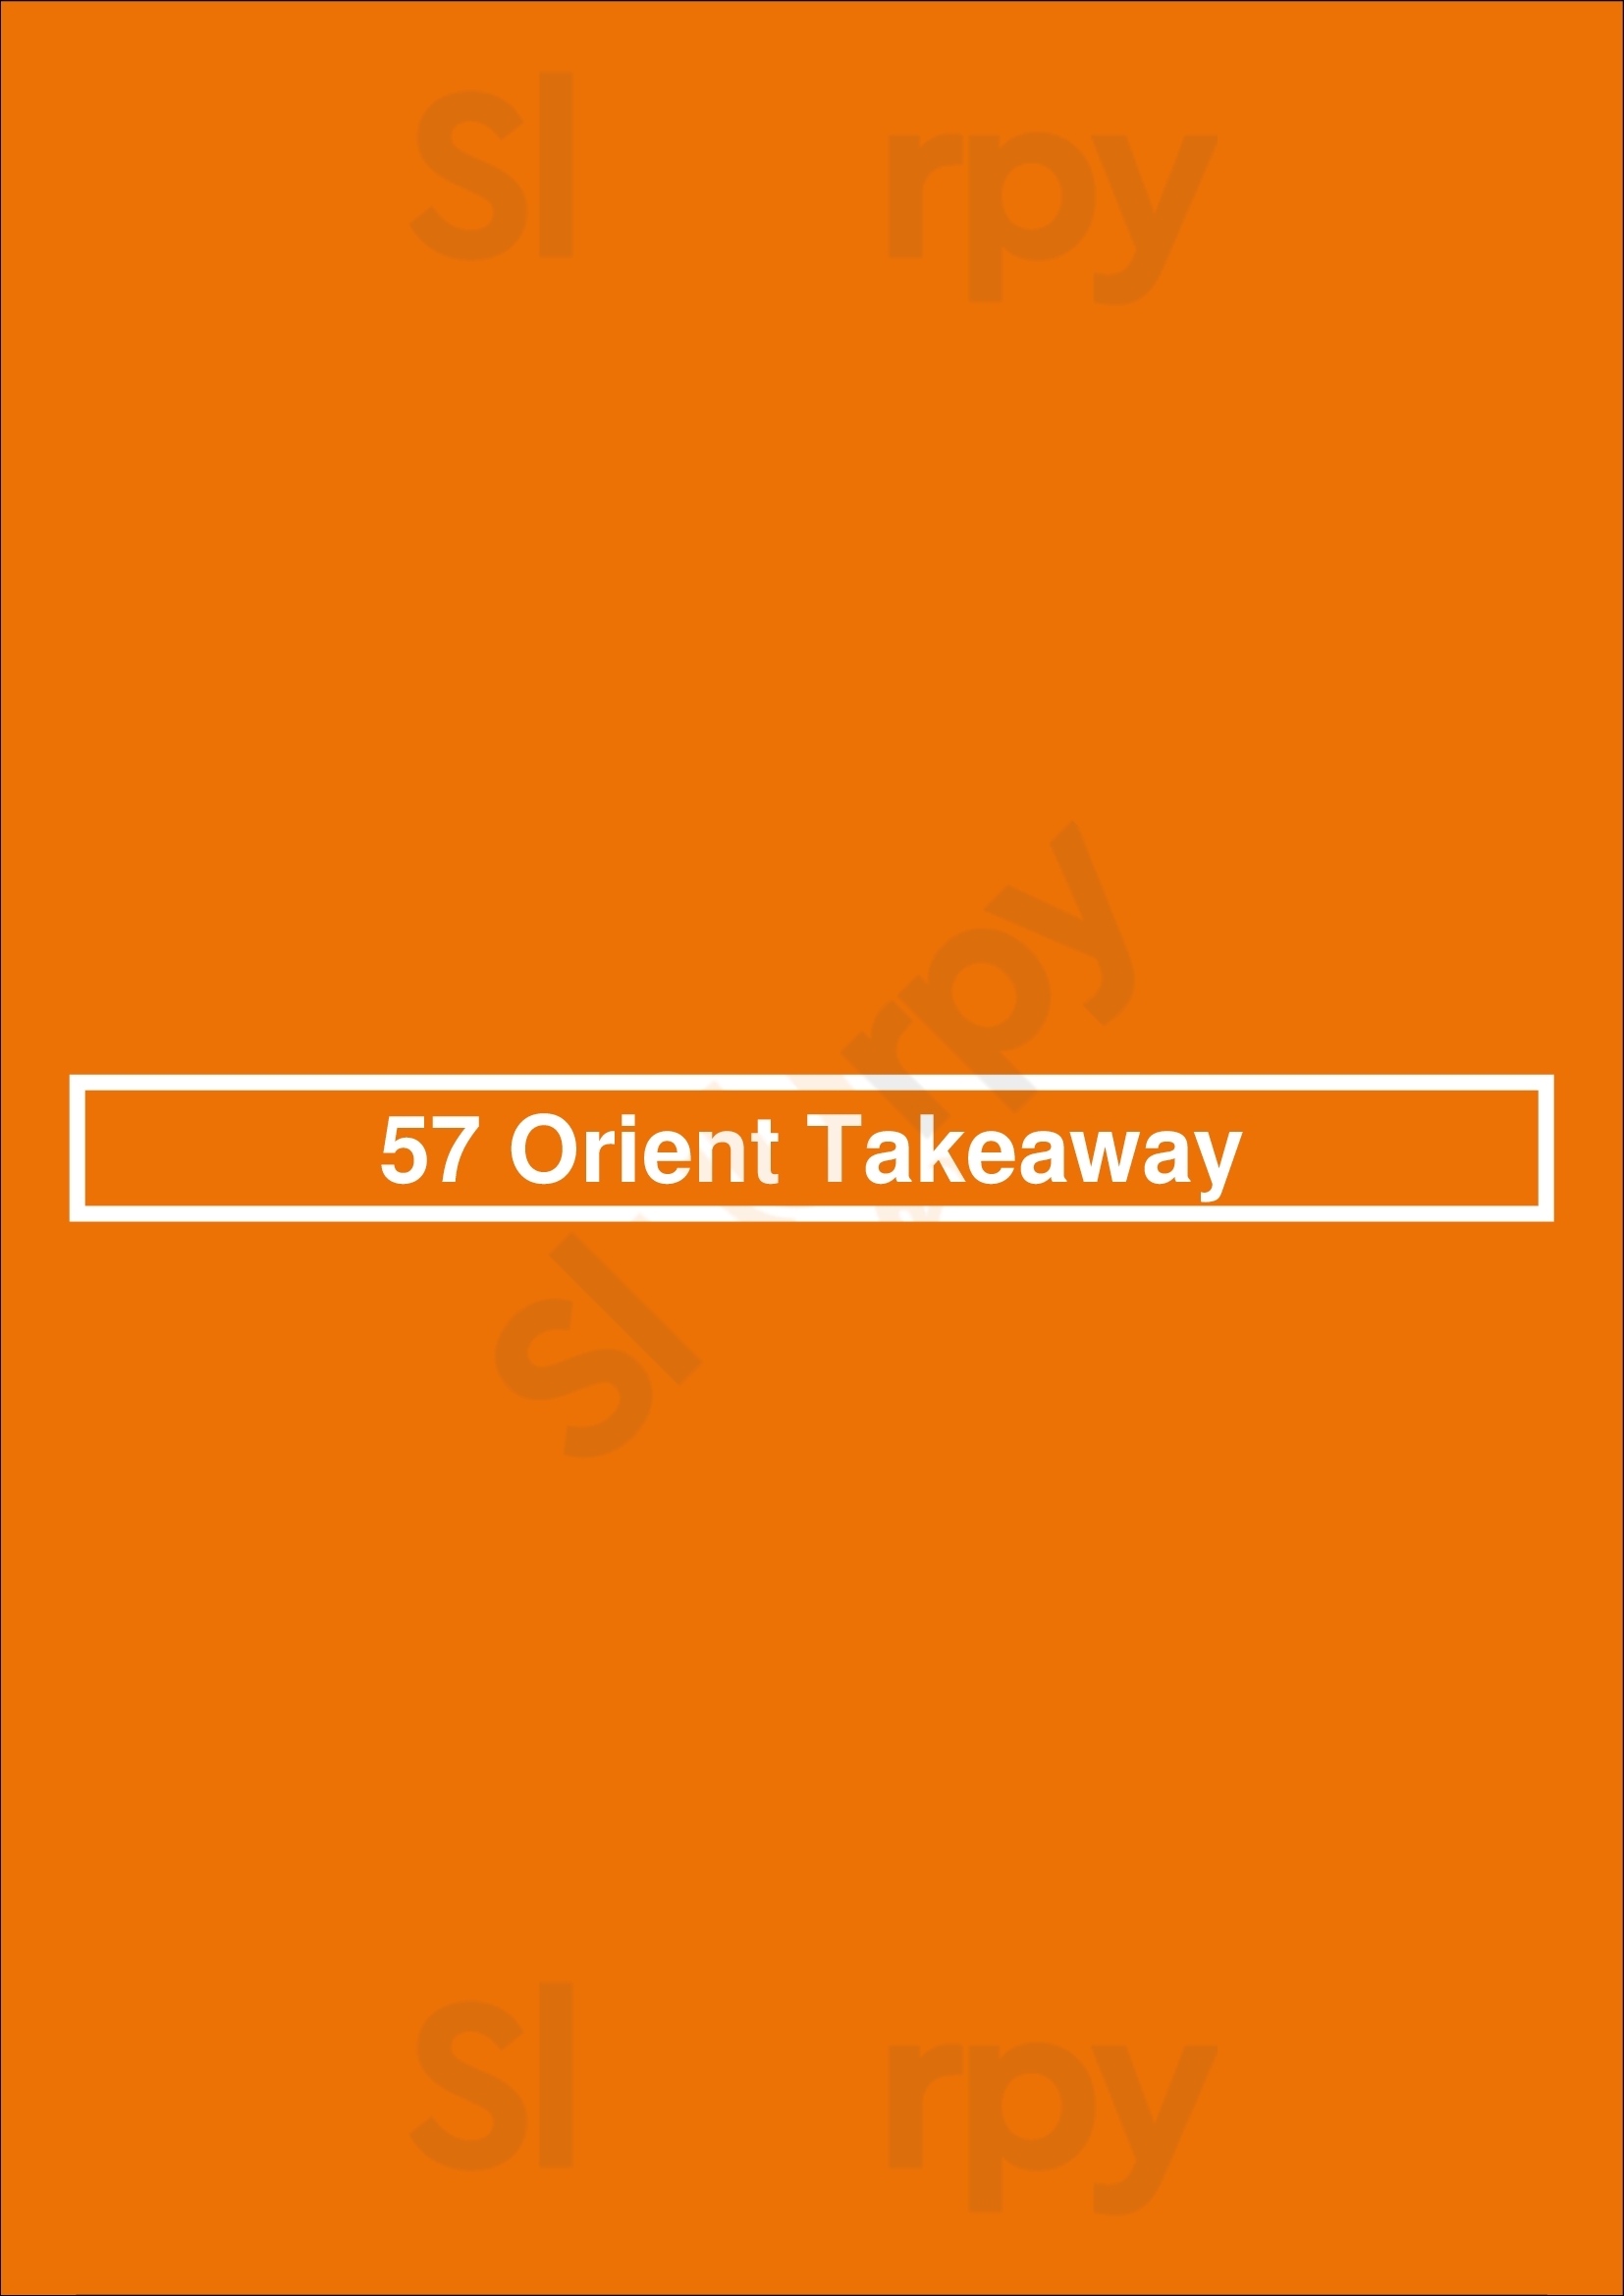 57 Orient Takeaway Southport Menu - 1